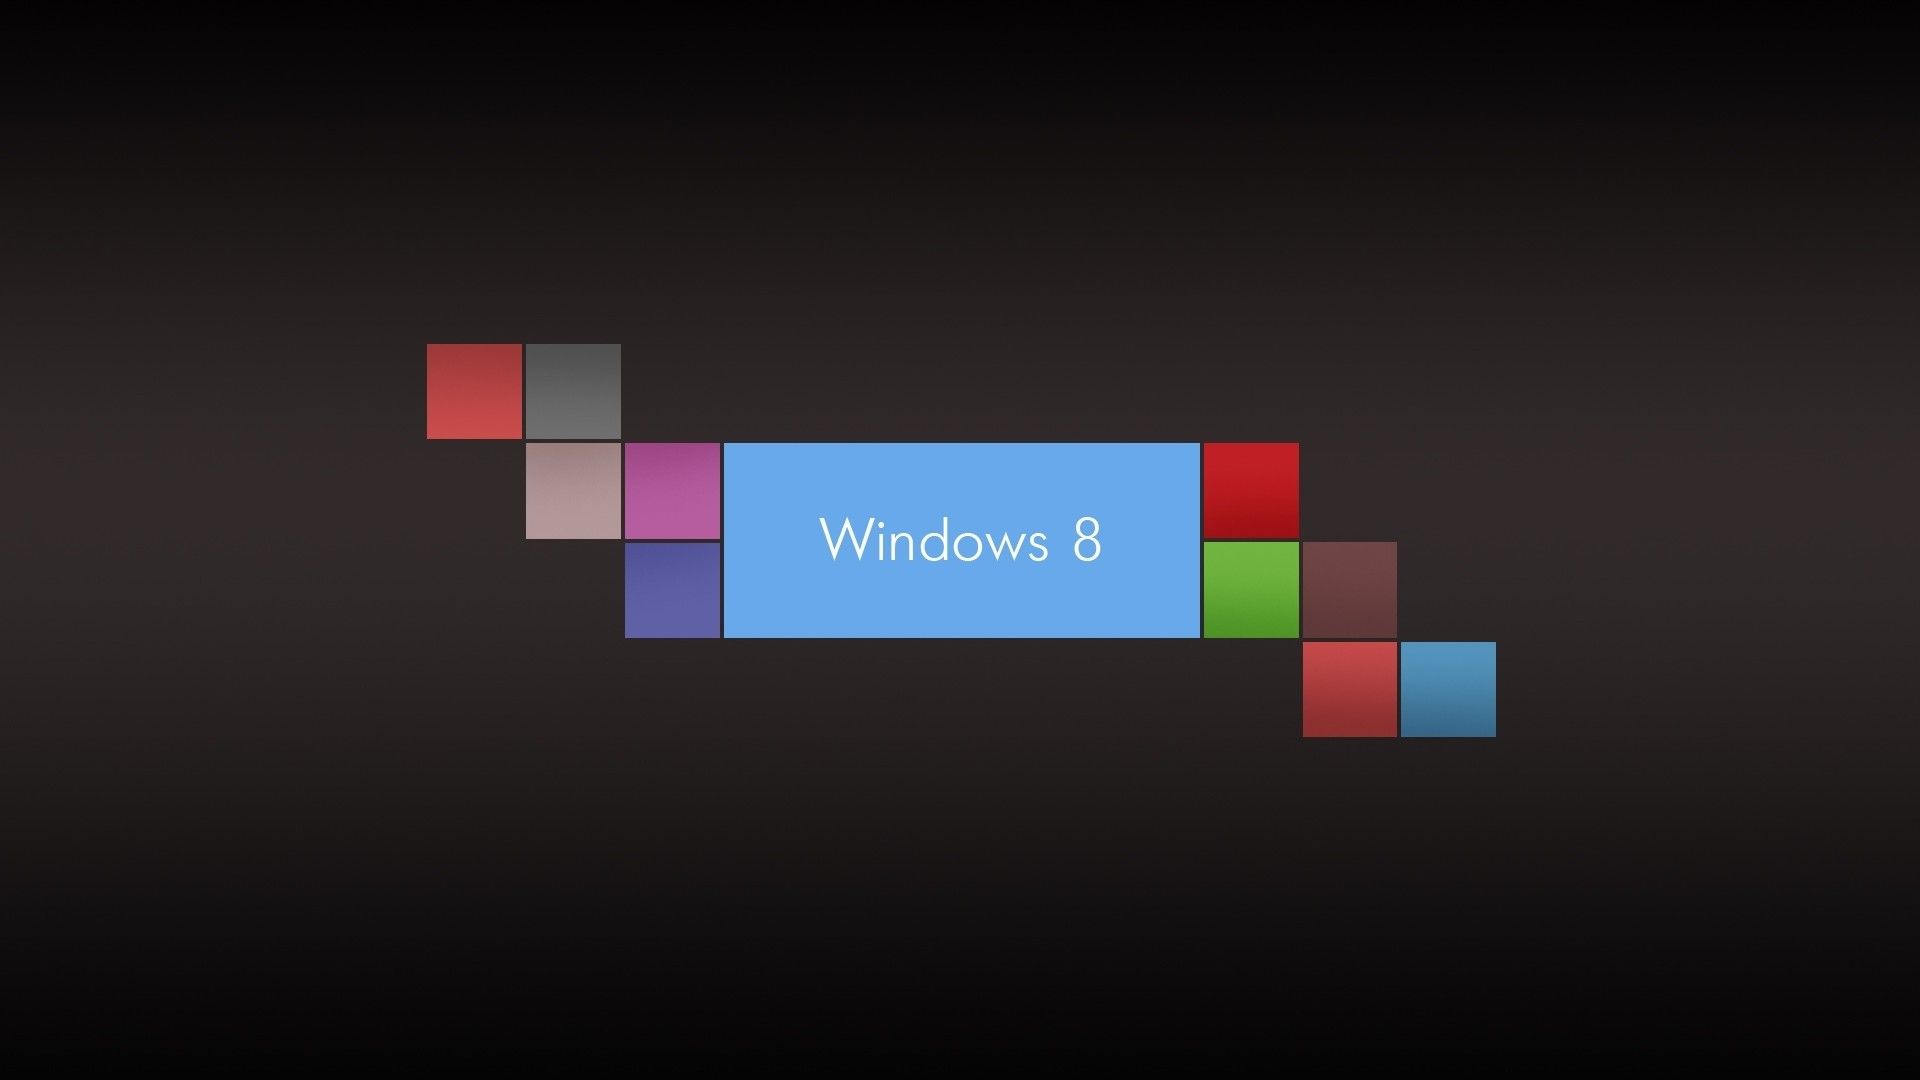 Windows 8 Logo And Brands Computer Wallpaper H #2668 Wallpaper ...